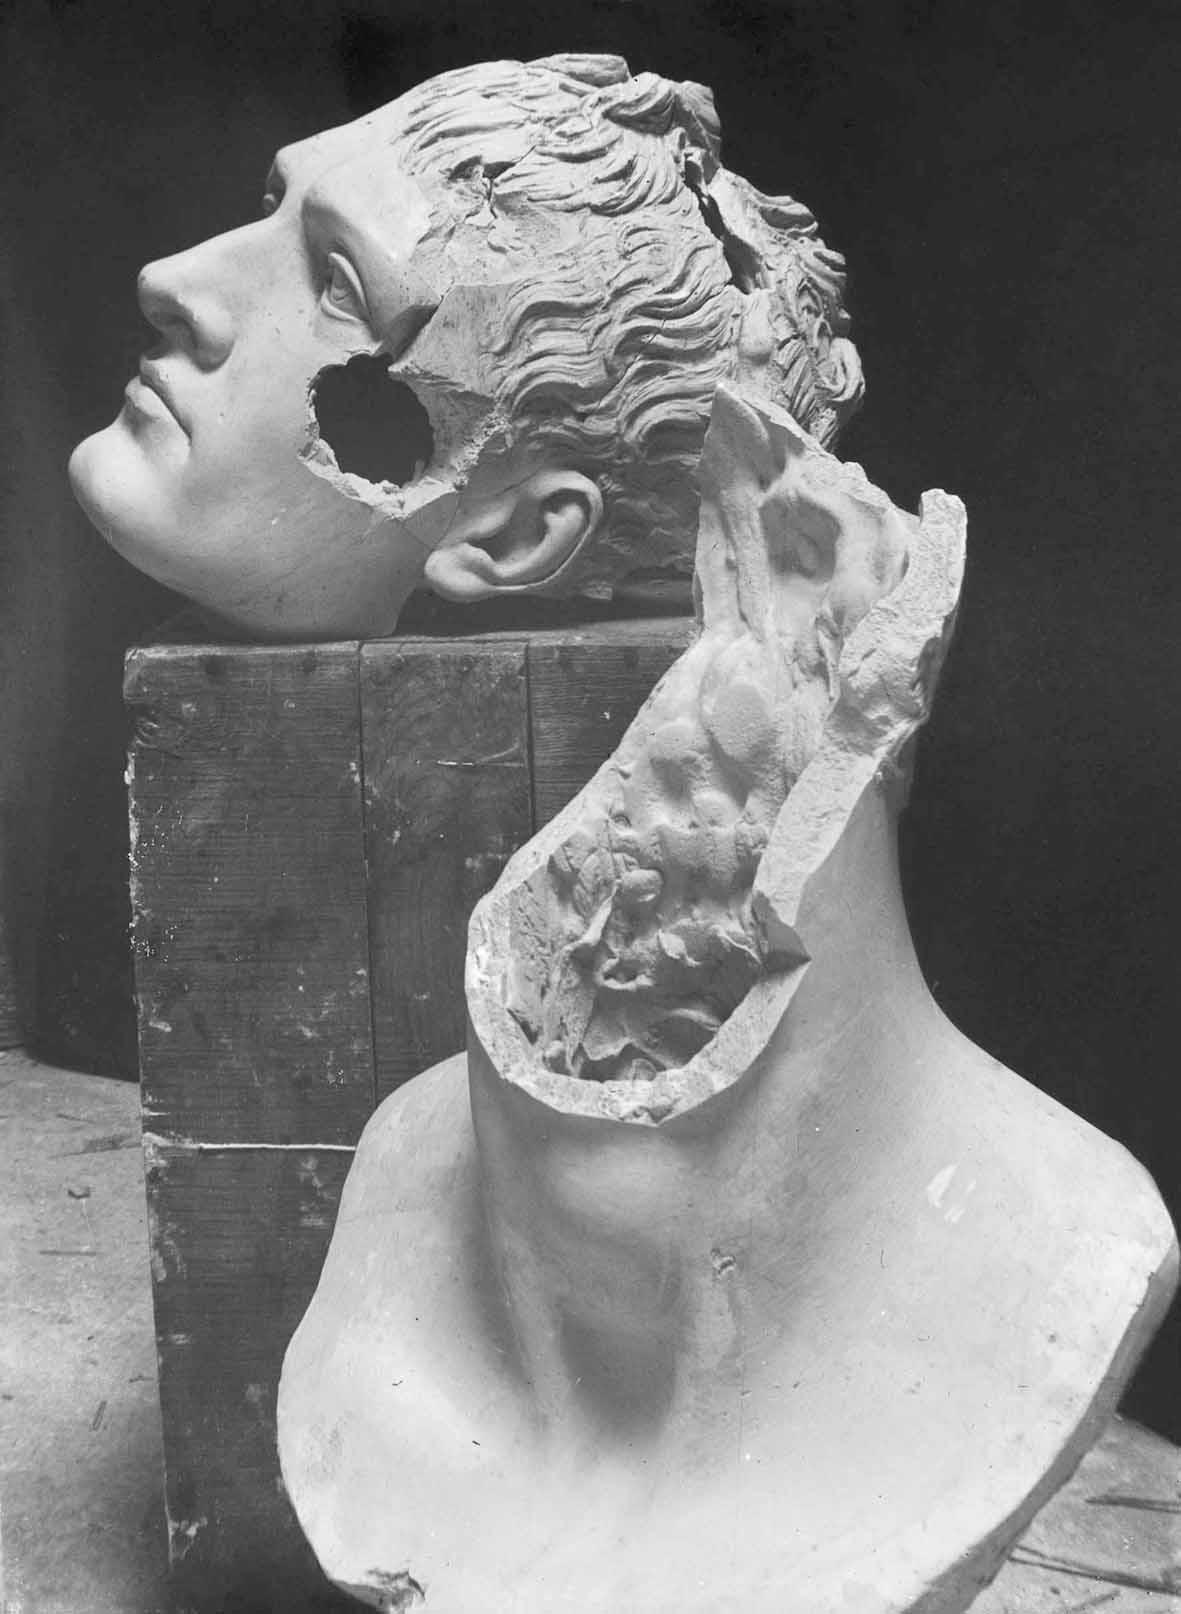 Serafin e l’arte mutilata di Antonio Canova. I marmi martirizzati a Possagno